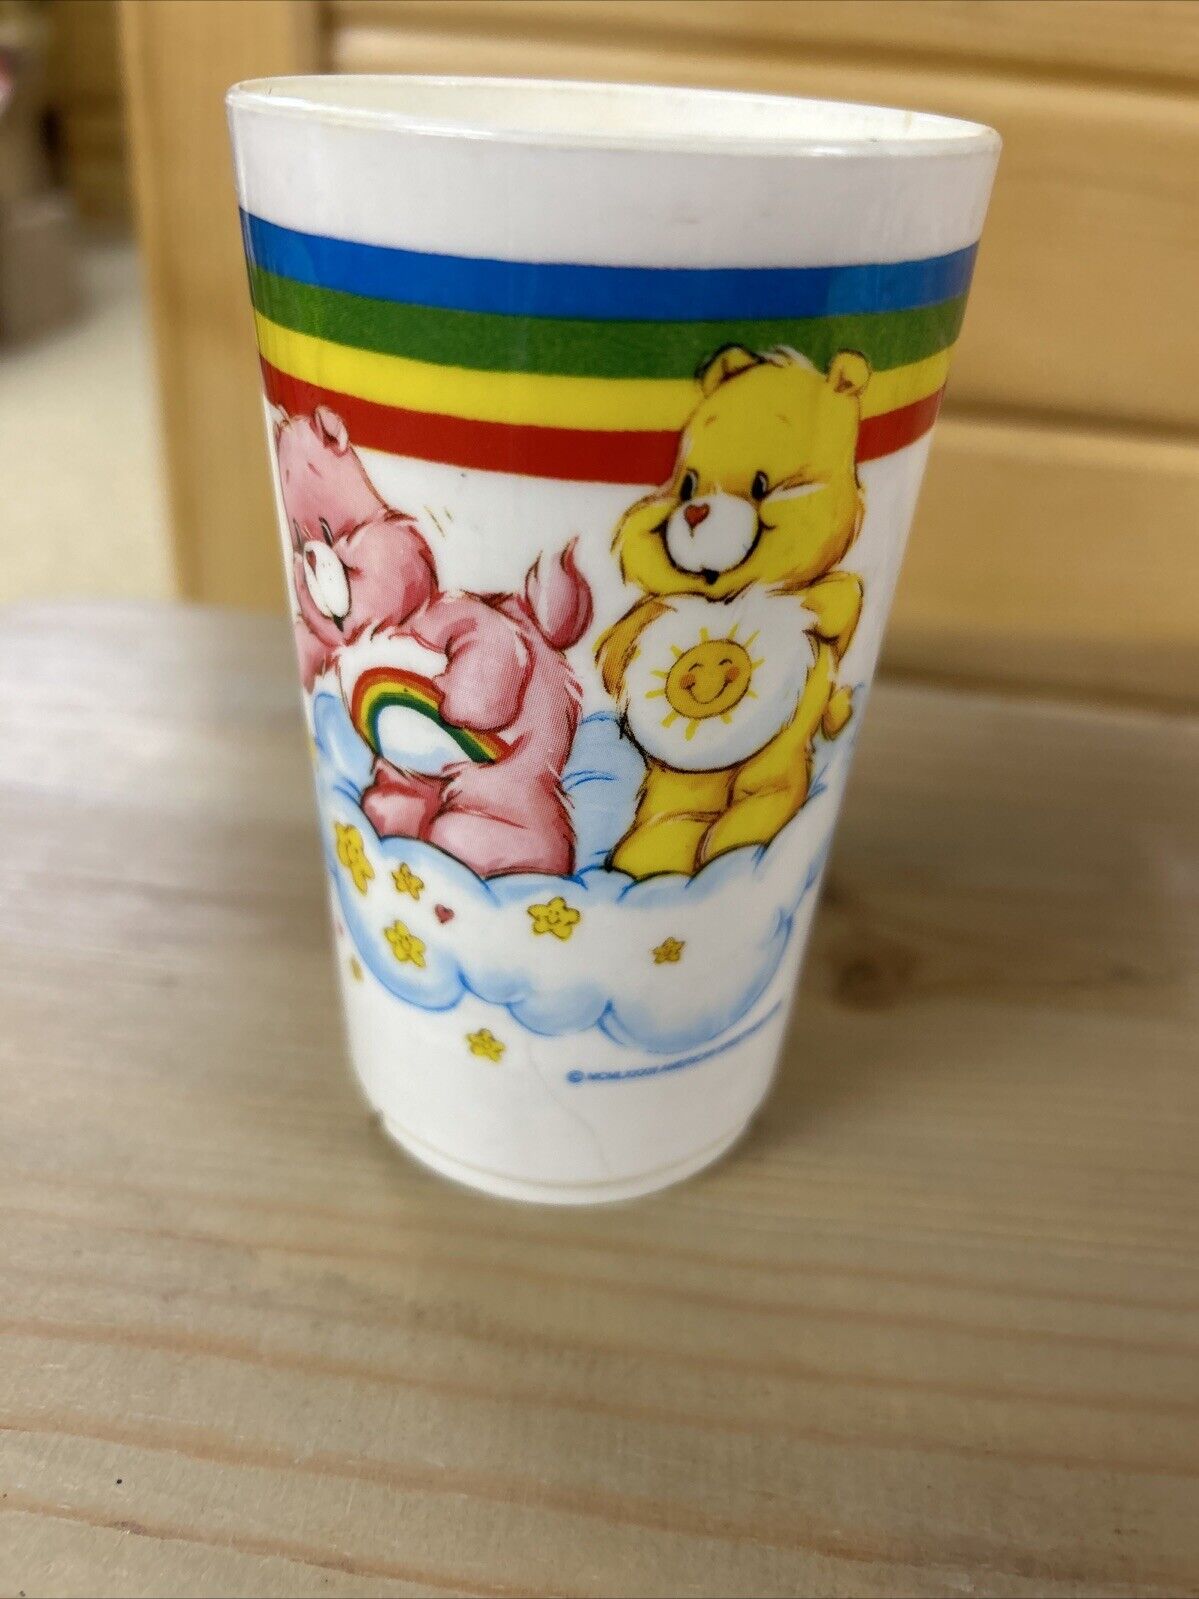 Vintage Care Bears Plastic Cup Mug Rainbow by Deka Plastics USA.